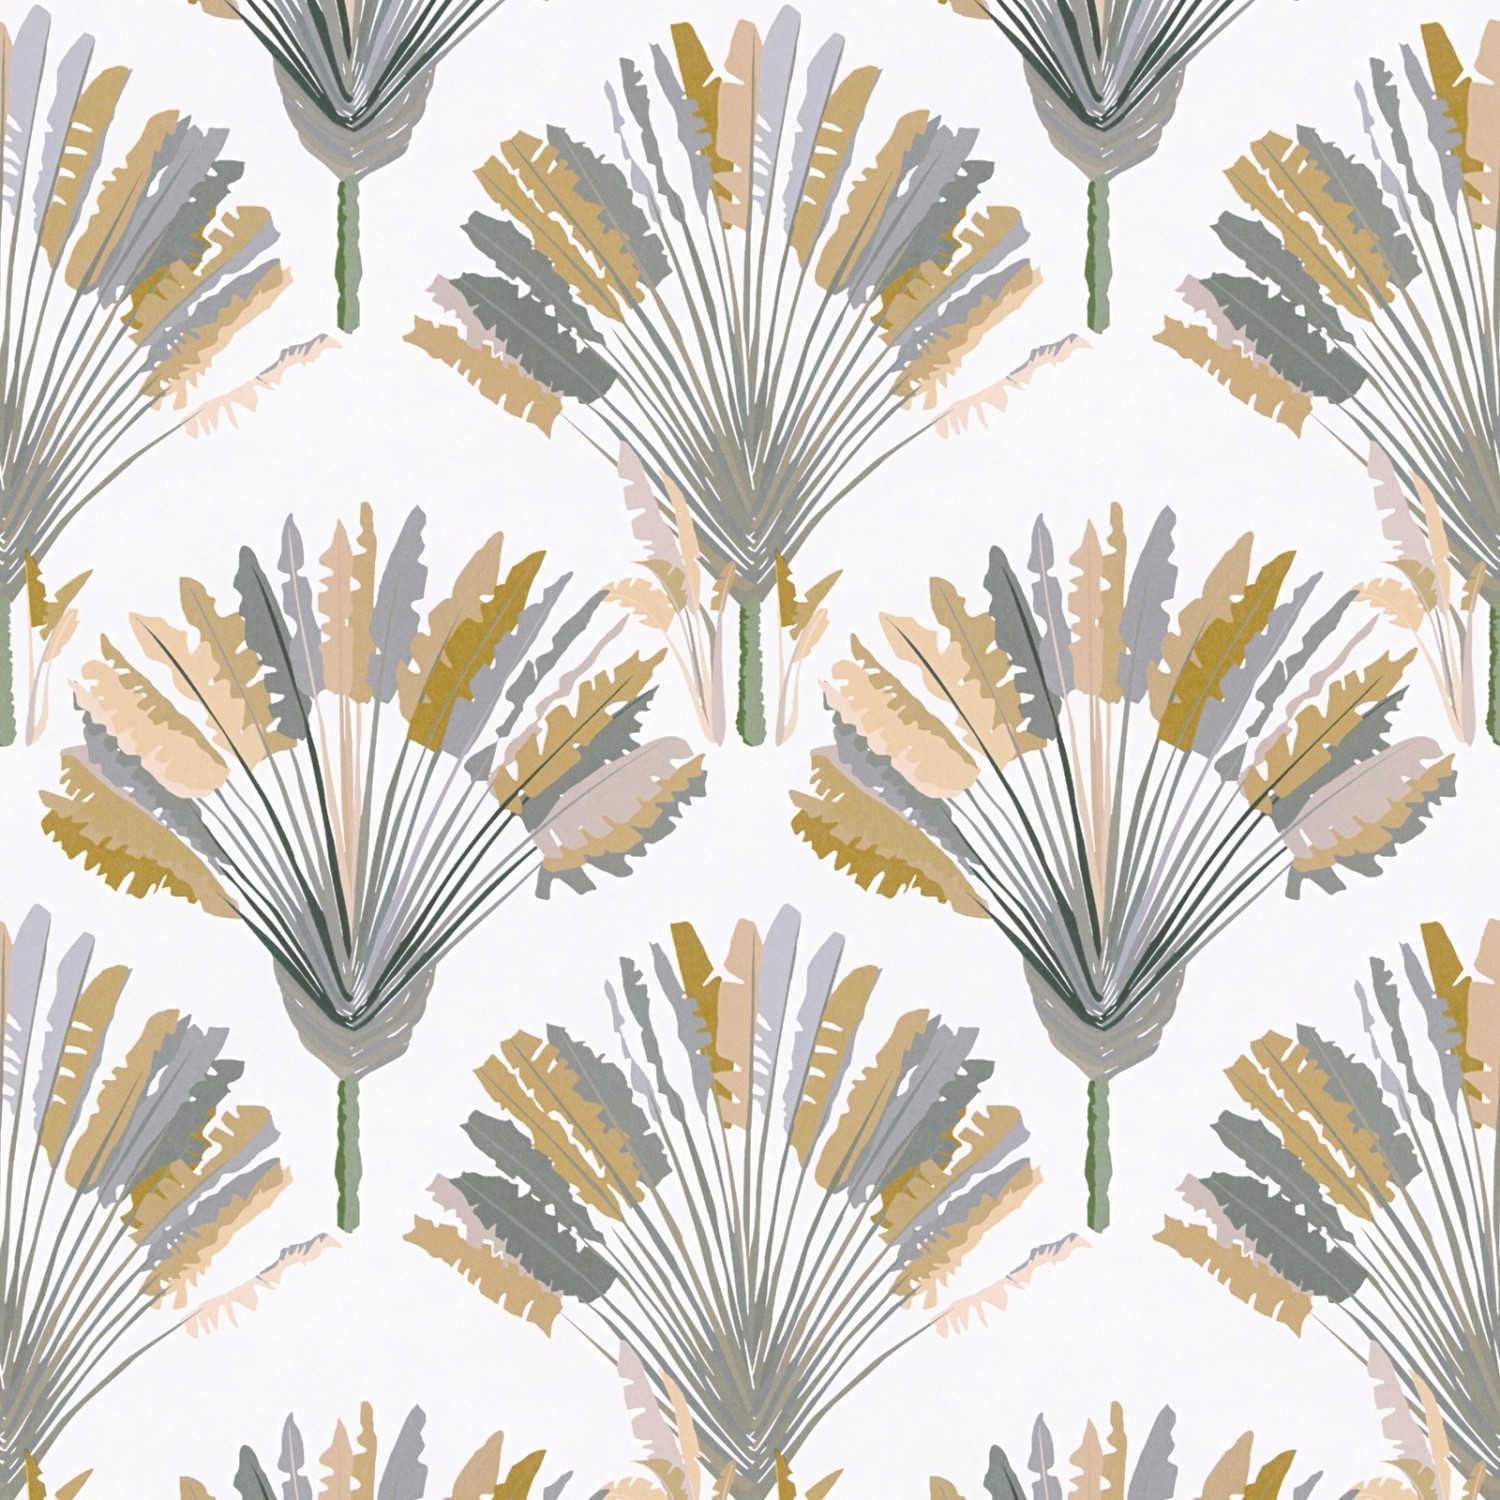 Bricoflor Moderne Palmentapete Nordisch Moderne Tapete mit Palmen Design in Feder Optik Weiße Vliestapete mit Muster in 